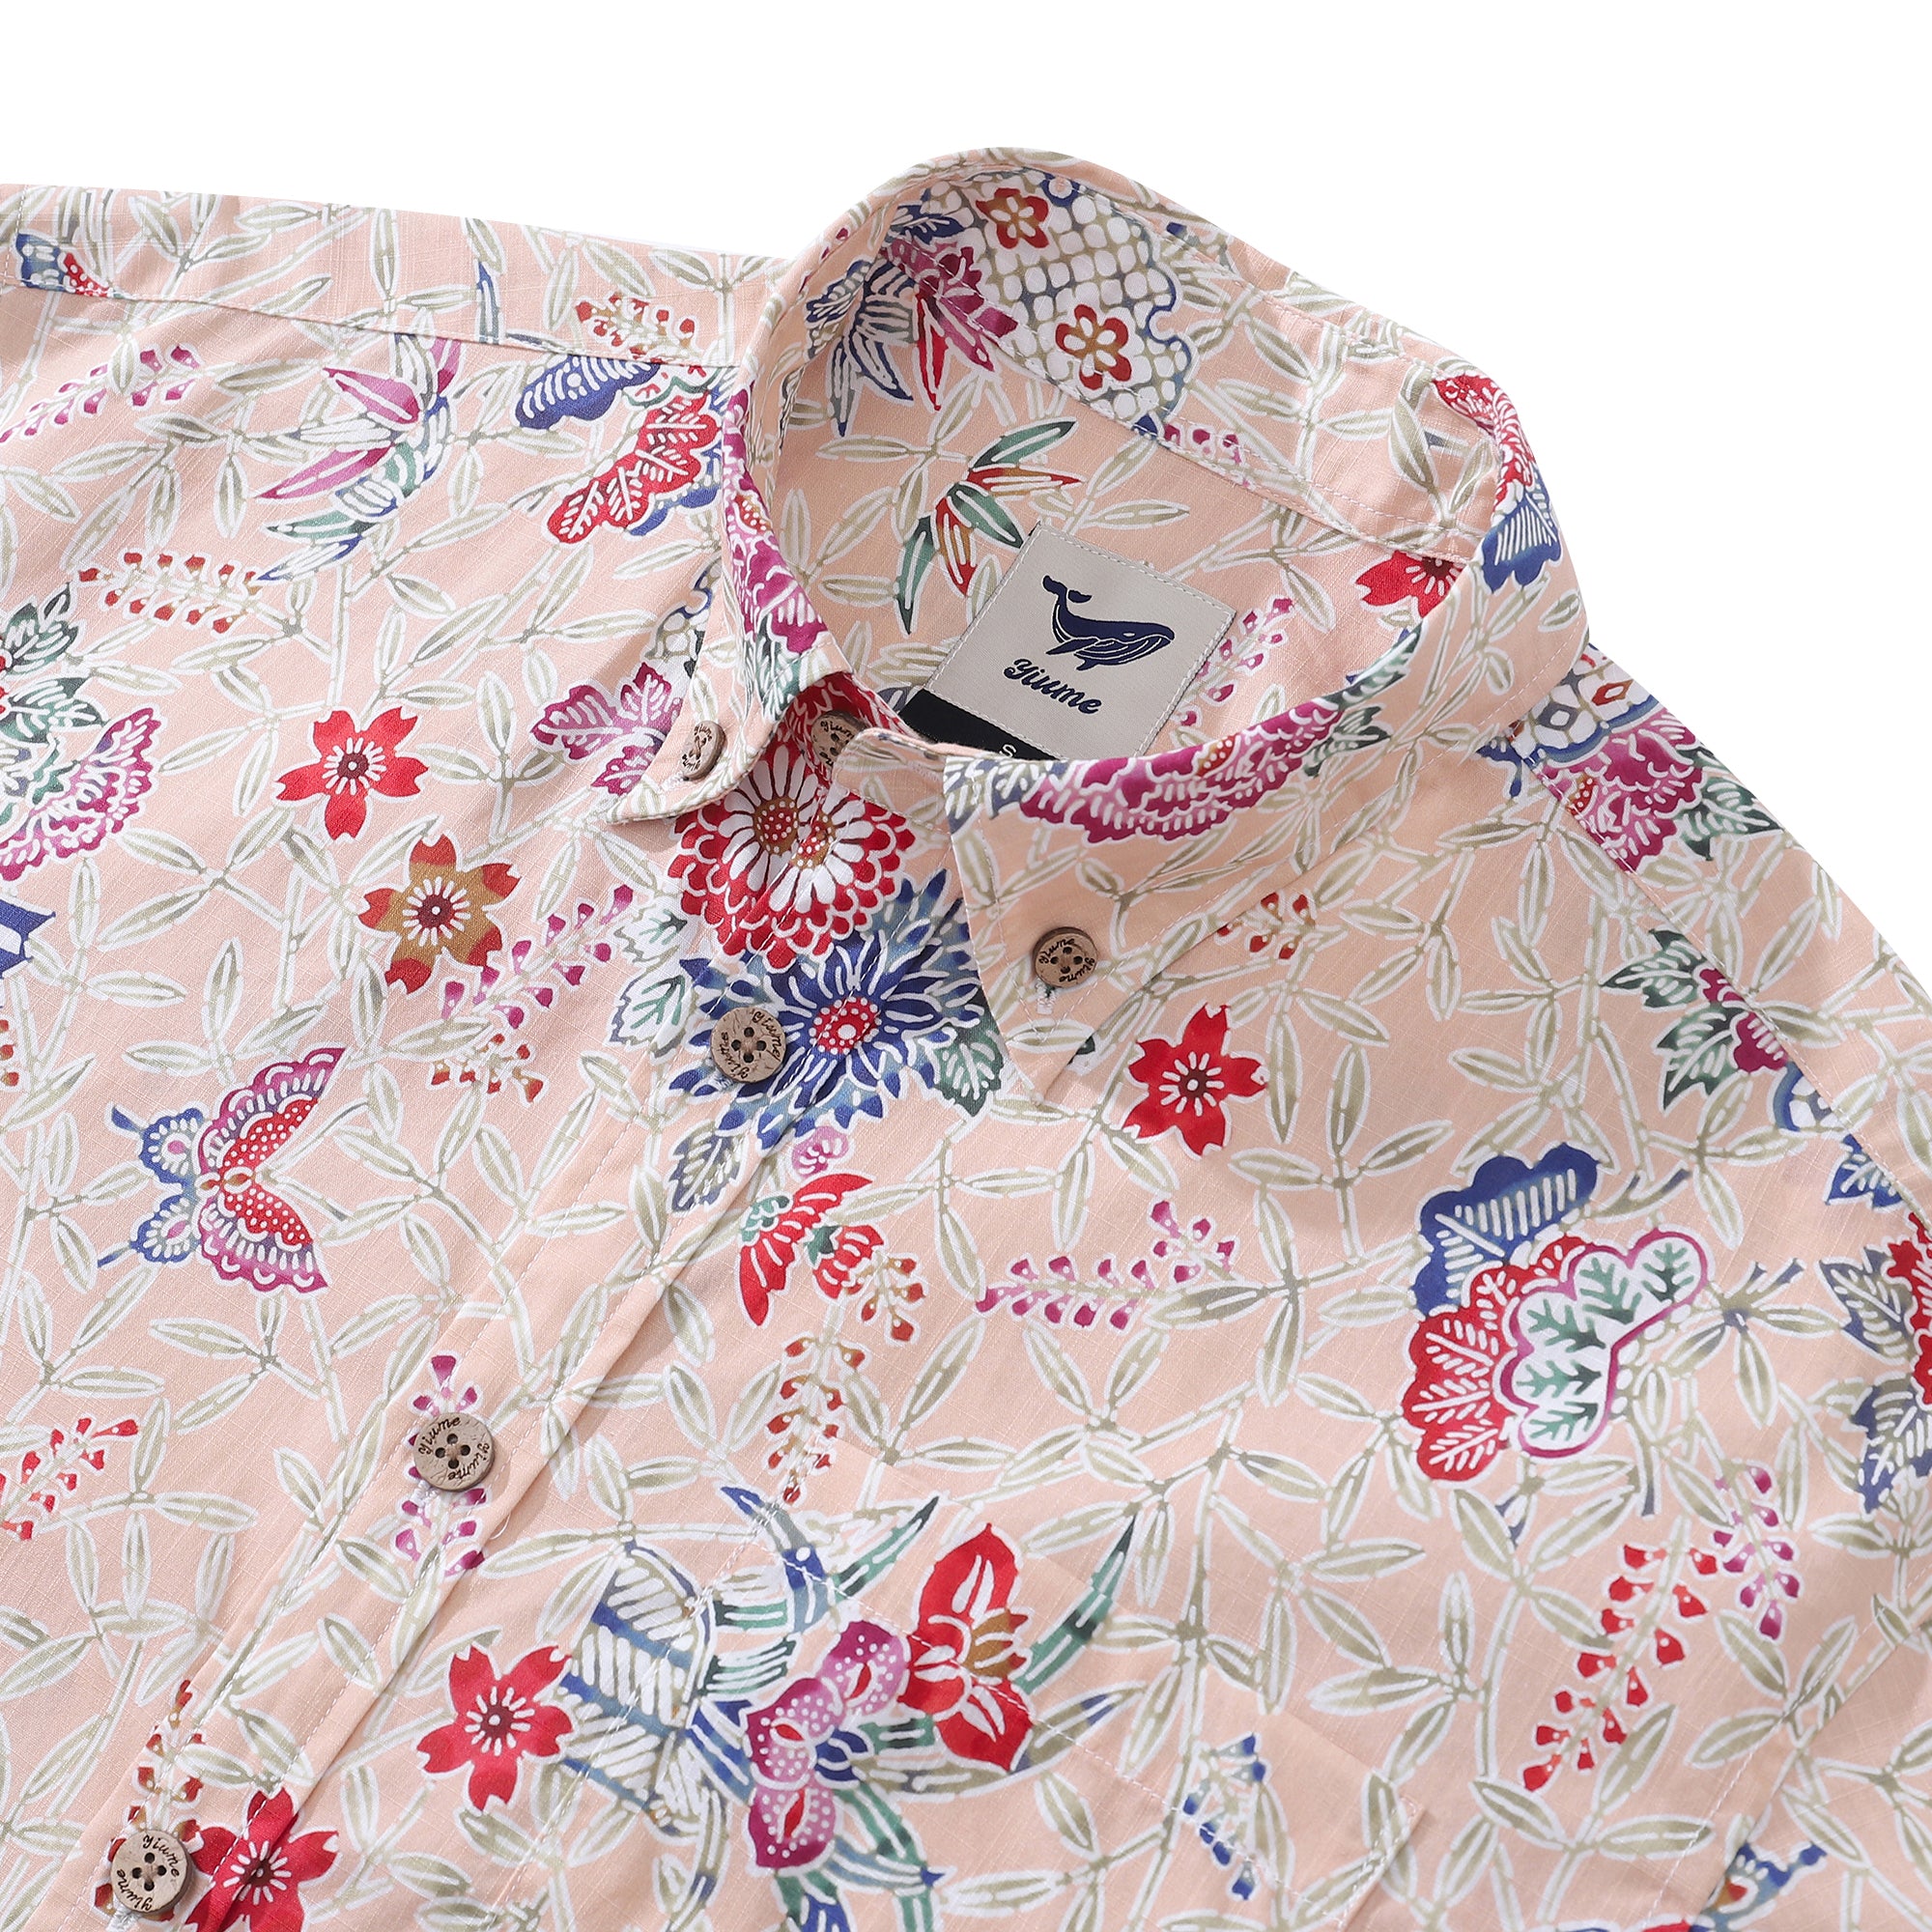 Men's Hawaiian Shirt Blossoms and Butterflies Print Cotton Button-down Short Sleeve Aloha Shirt